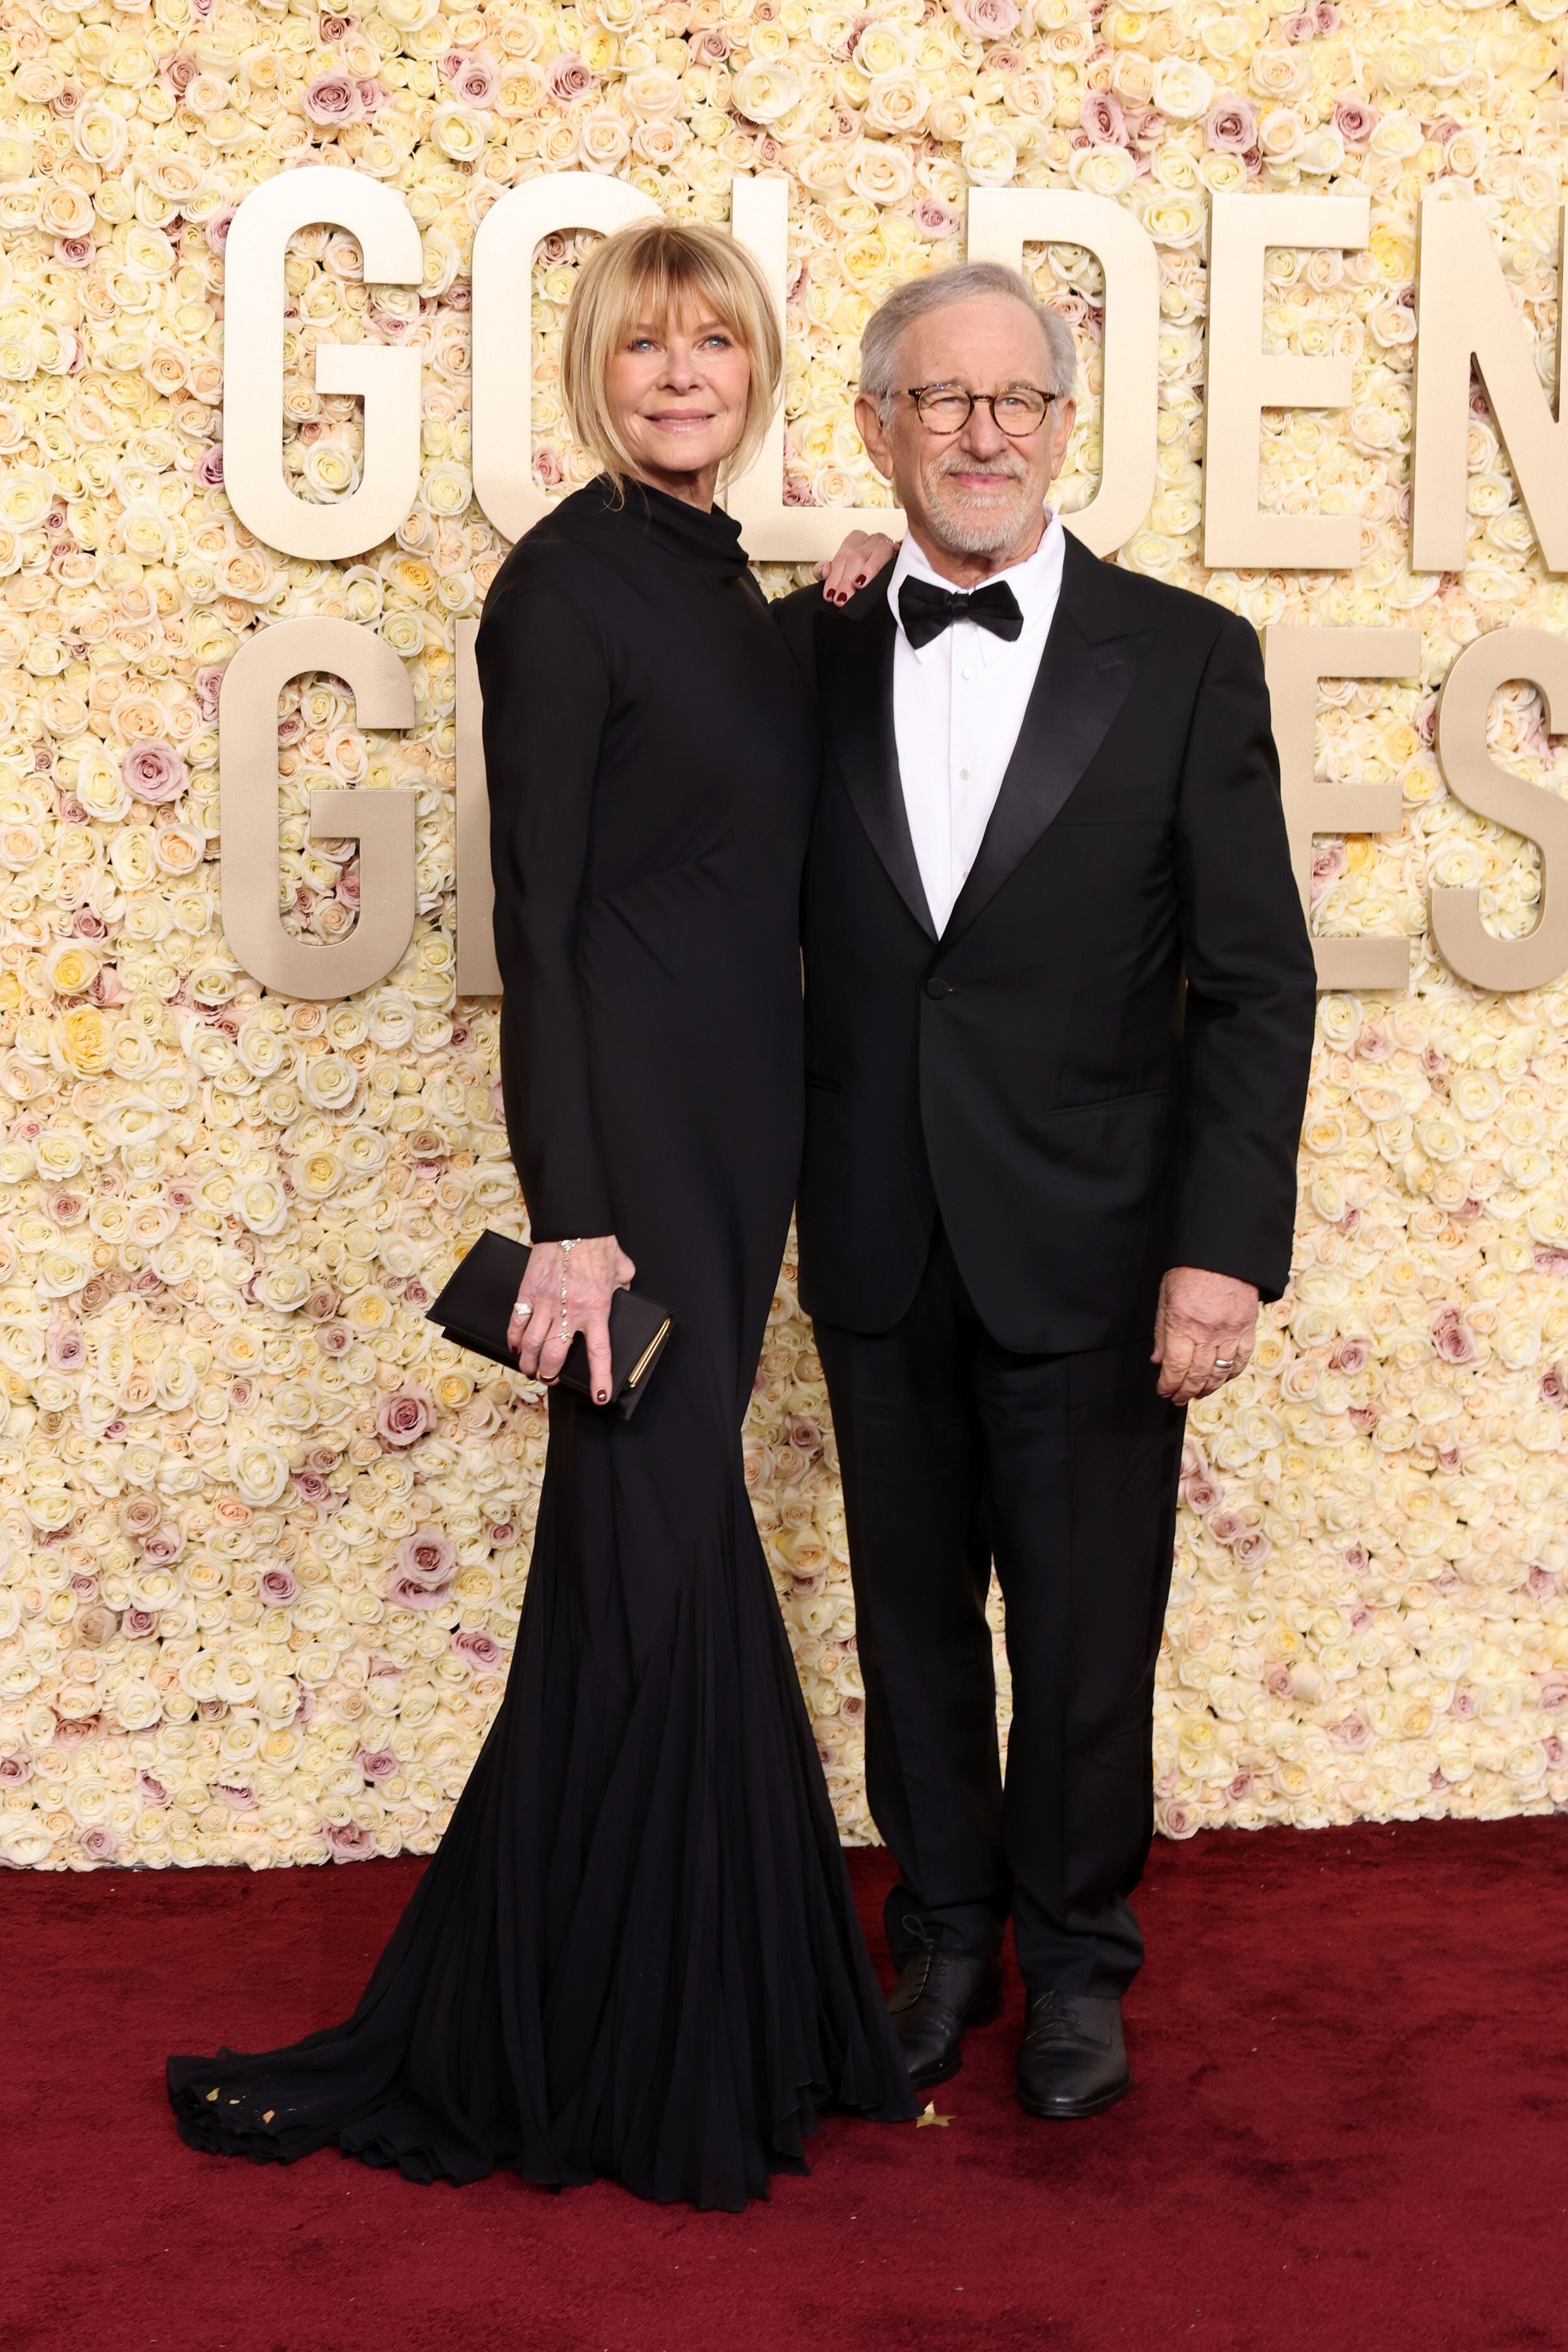 El matrimonio formado por Kate Capshaw y Steven Spielberg.